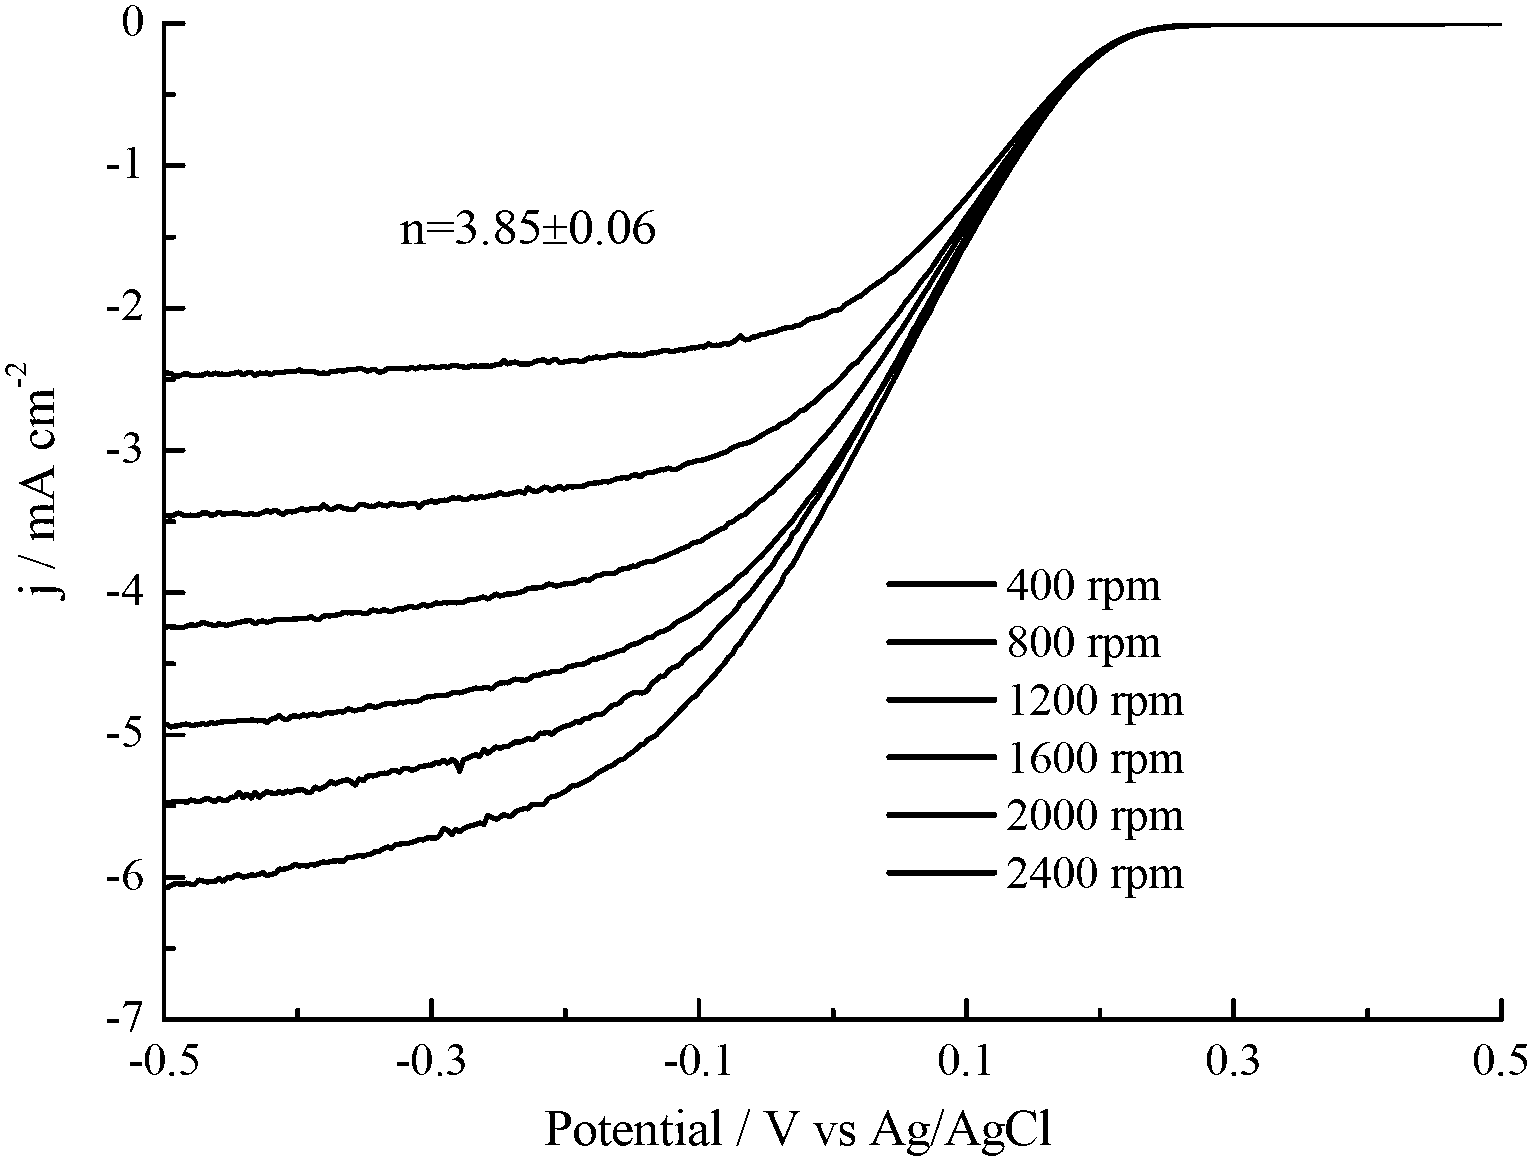 N-doped graphene preparation method and application of N-doped graphene